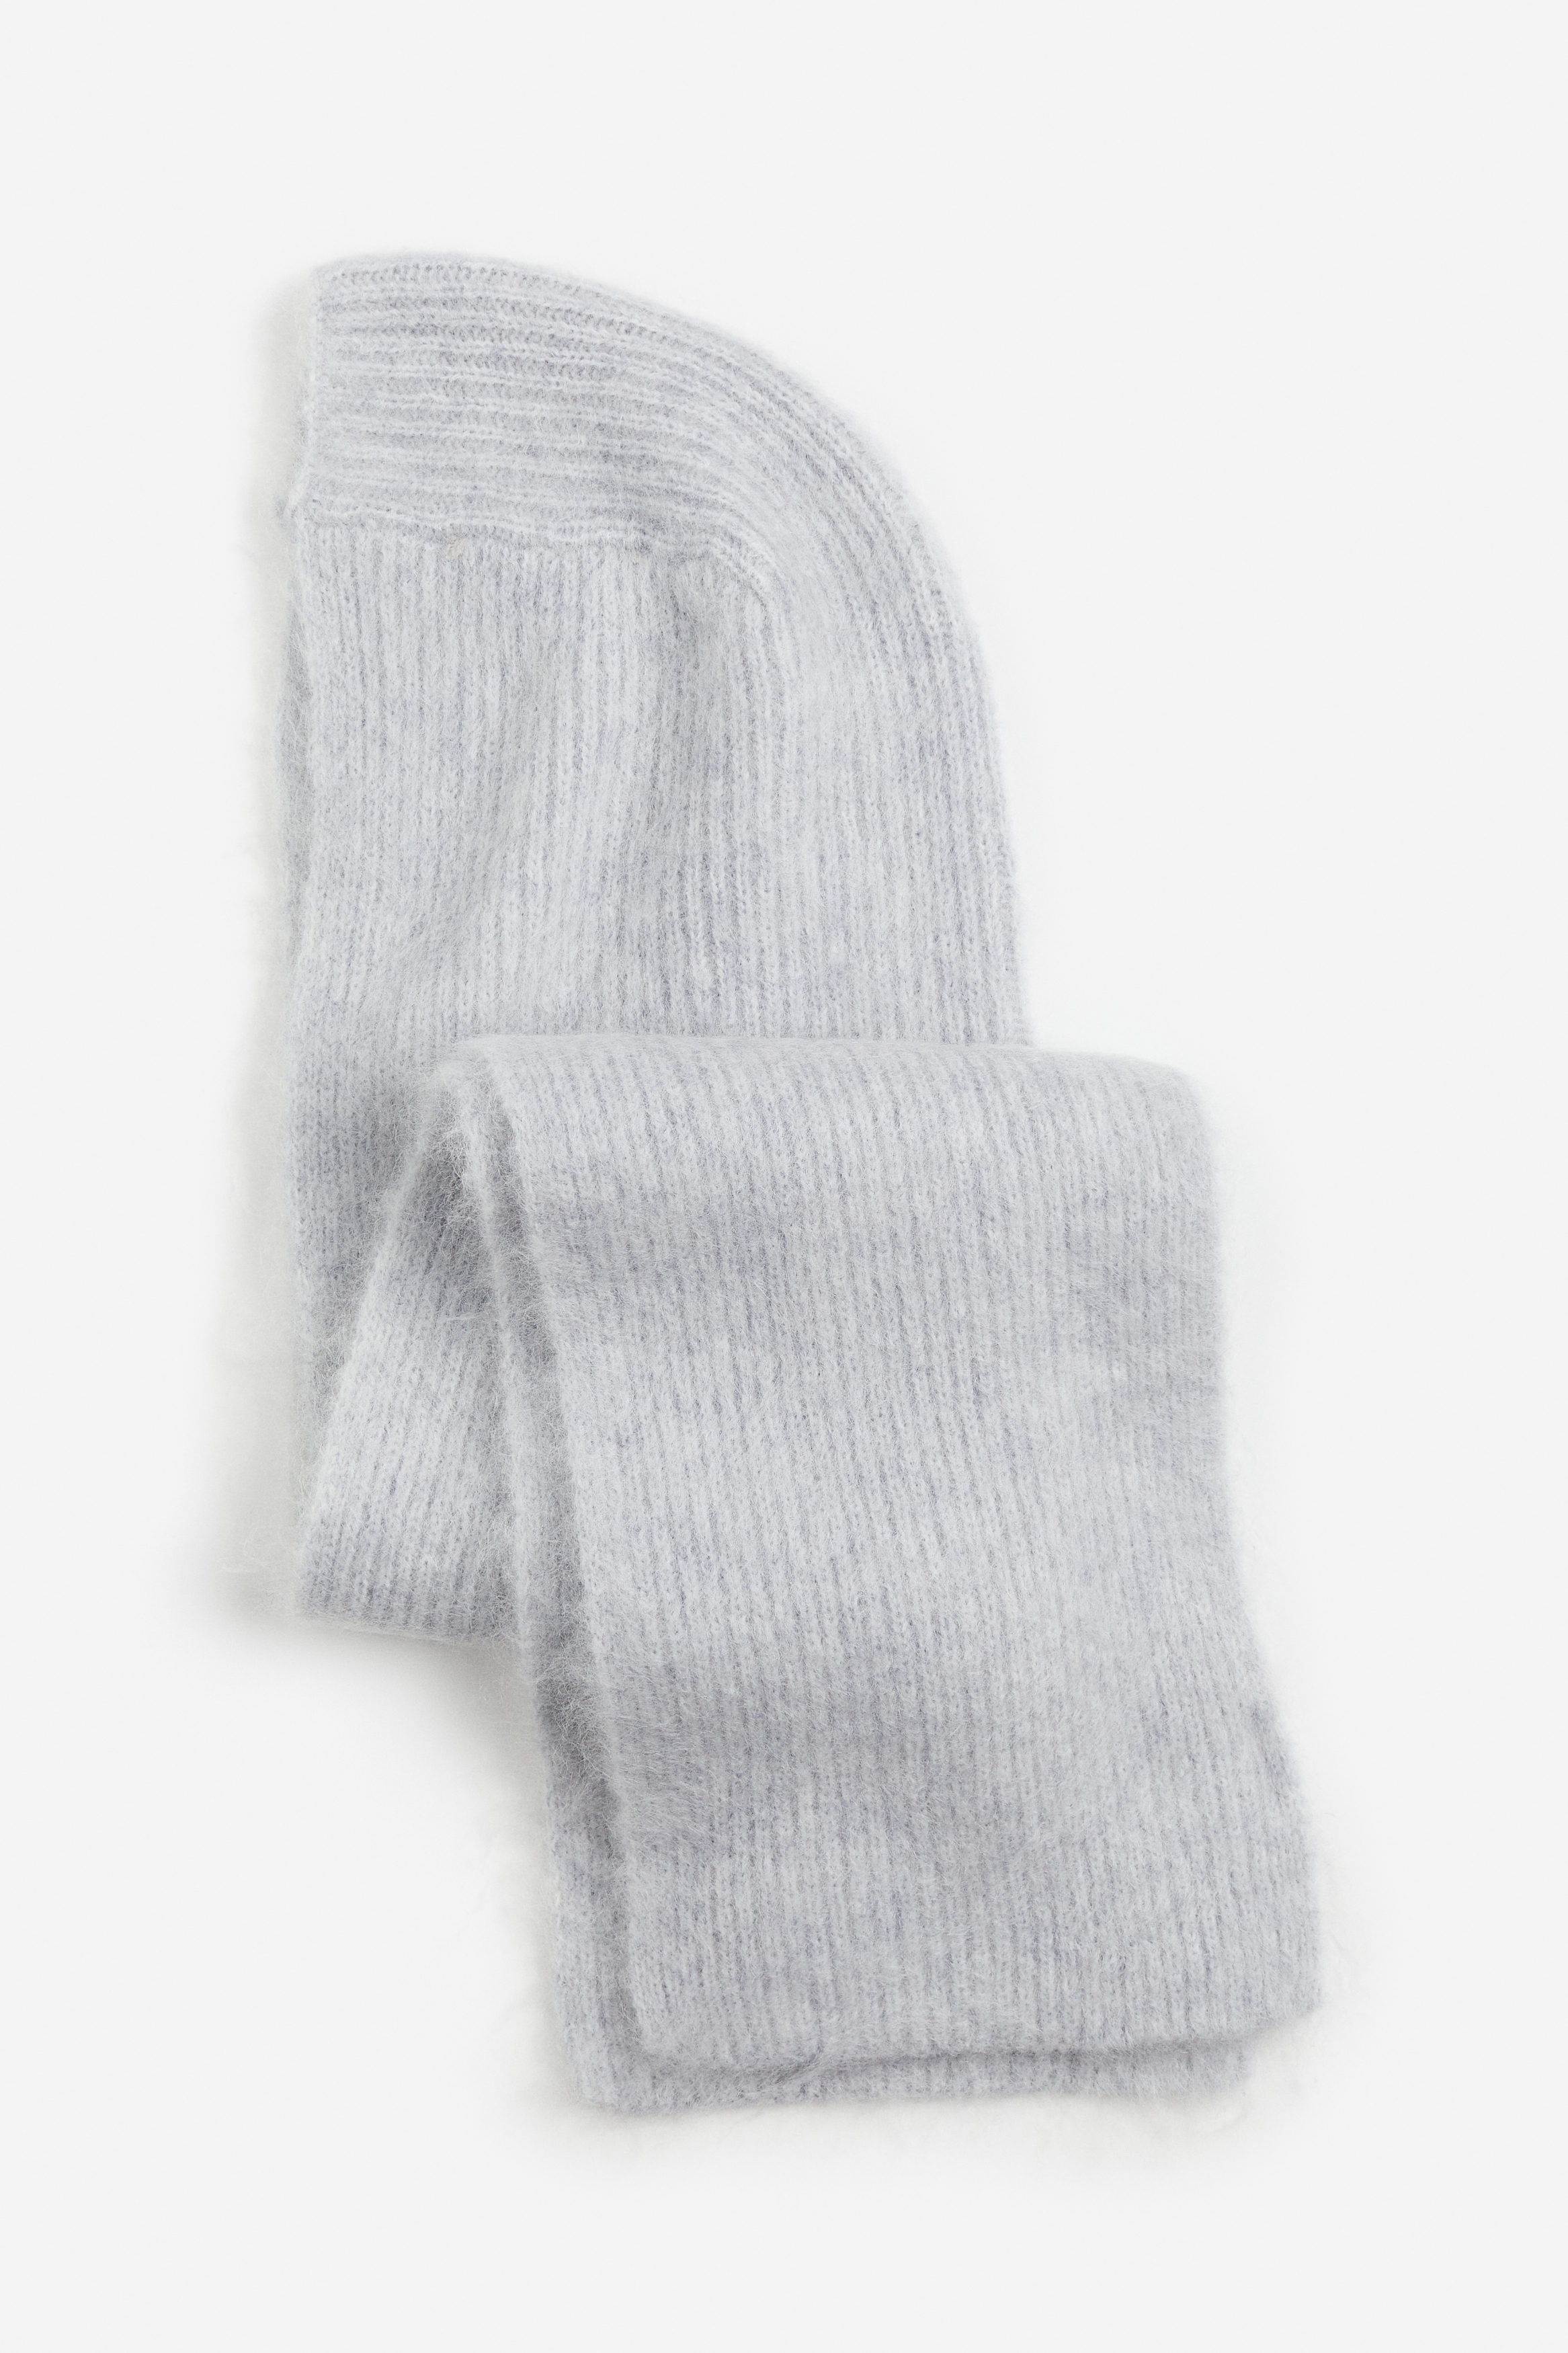 Billede af H&M Hætte Med Halstørklæde I Mohairblanding Lysegrå, Halstørklæder. Farve: Light grey størrelse M/L